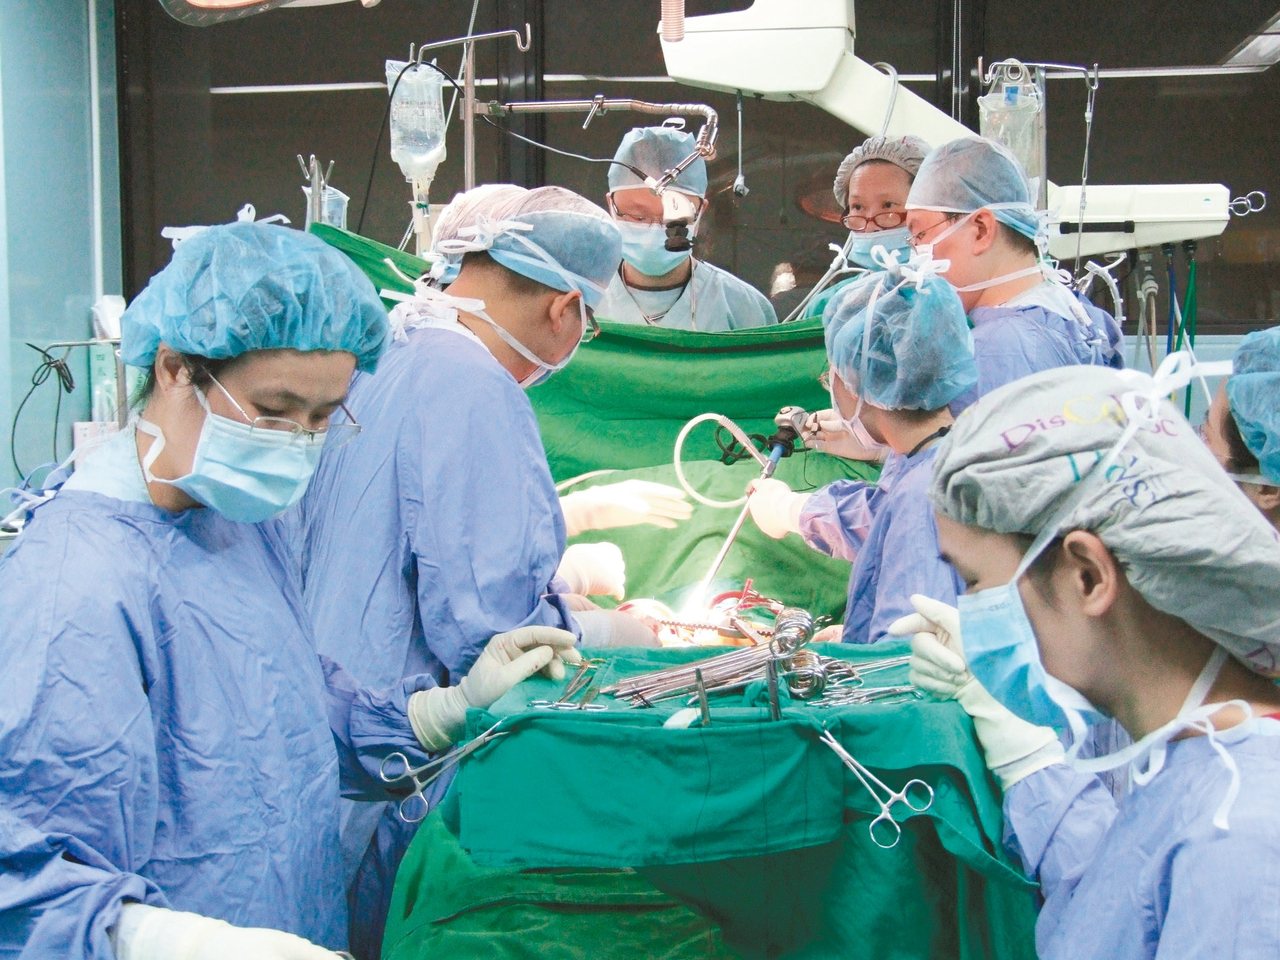 國內移植手術成績具國際水準，但大愛器捐人數少。圖為振興醫院心臟移植團隊手術畫面。